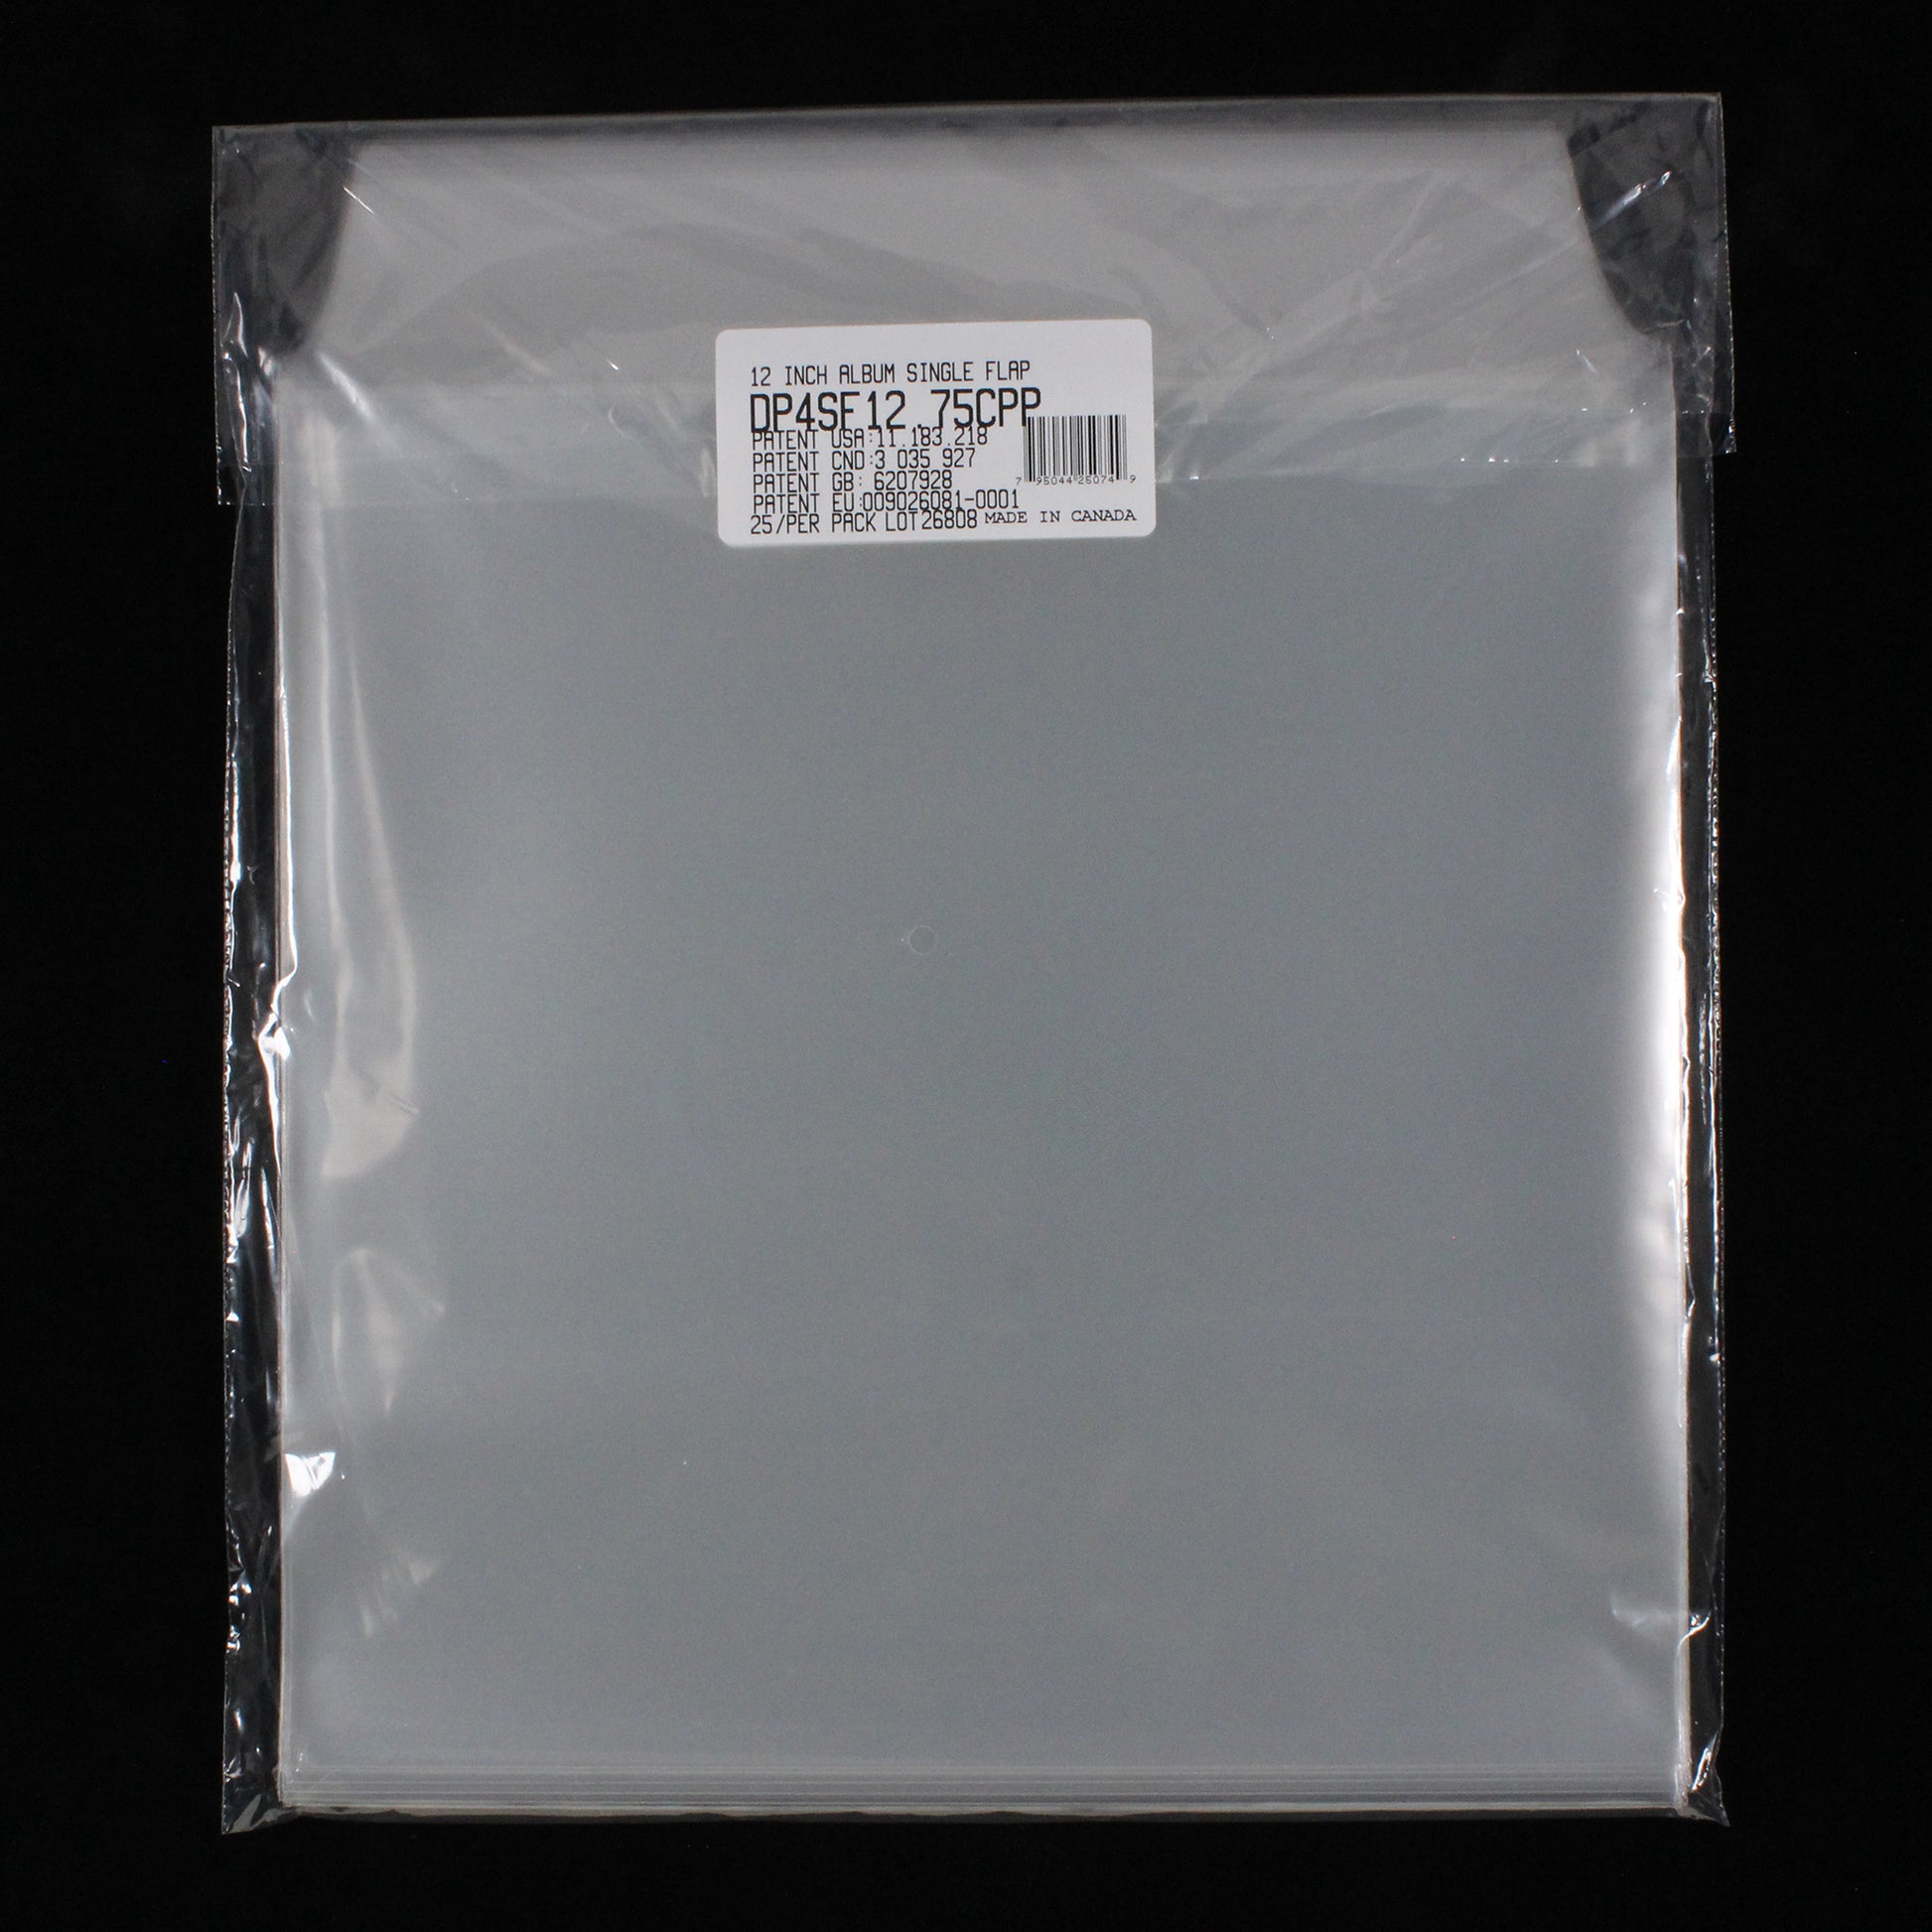 Comic Book Single Pocket Sleeves w/ Flap - 4mil (25 pack) – Vinyl Storage  Solutions